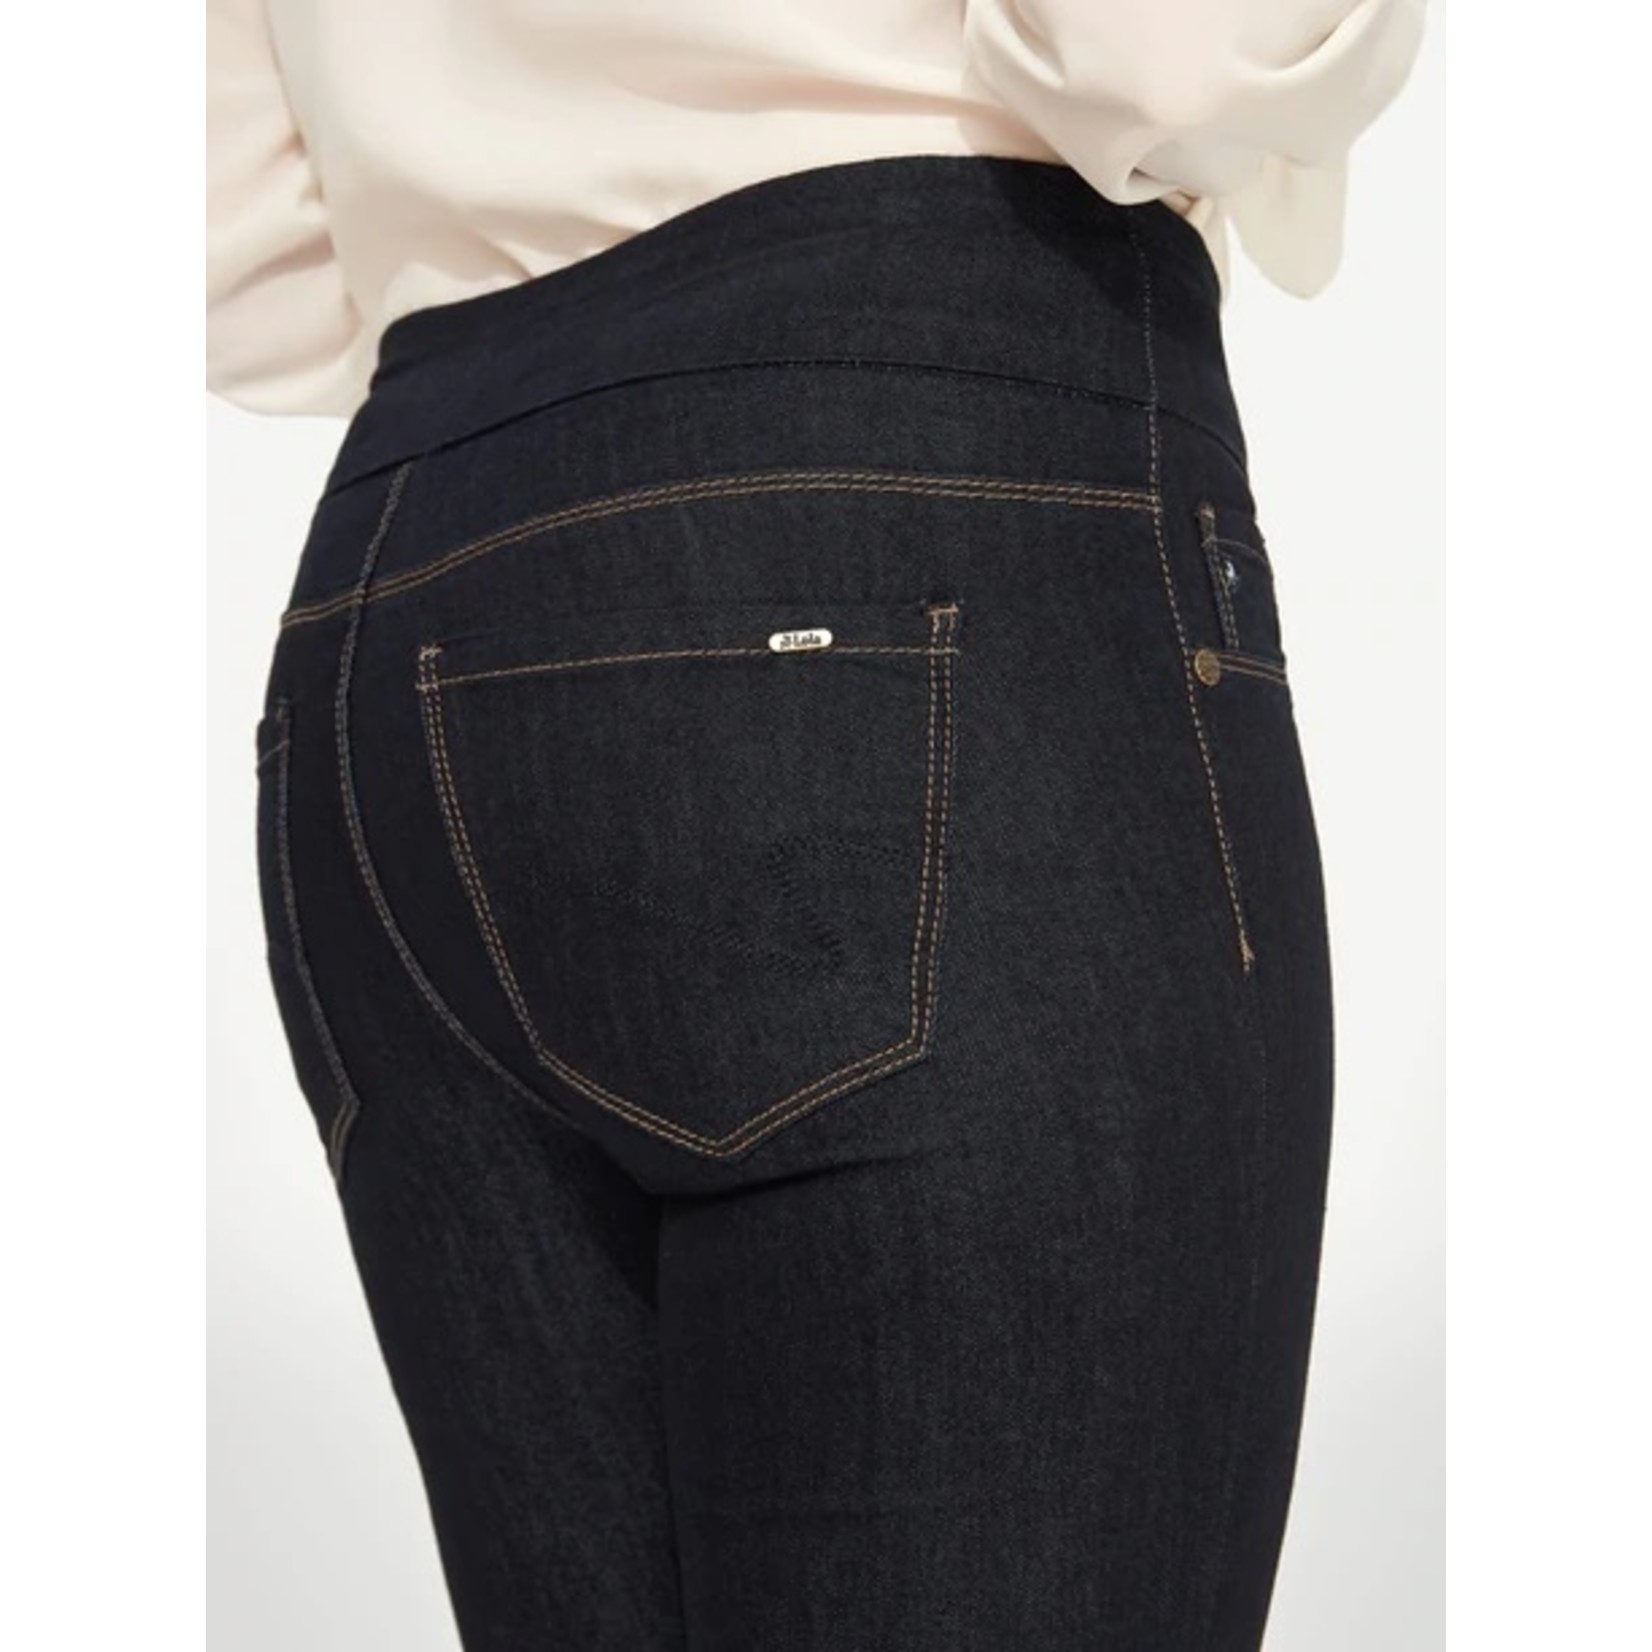 Lois Lois ladies regular waist  pull on skinny jean, jeans, pant, pants